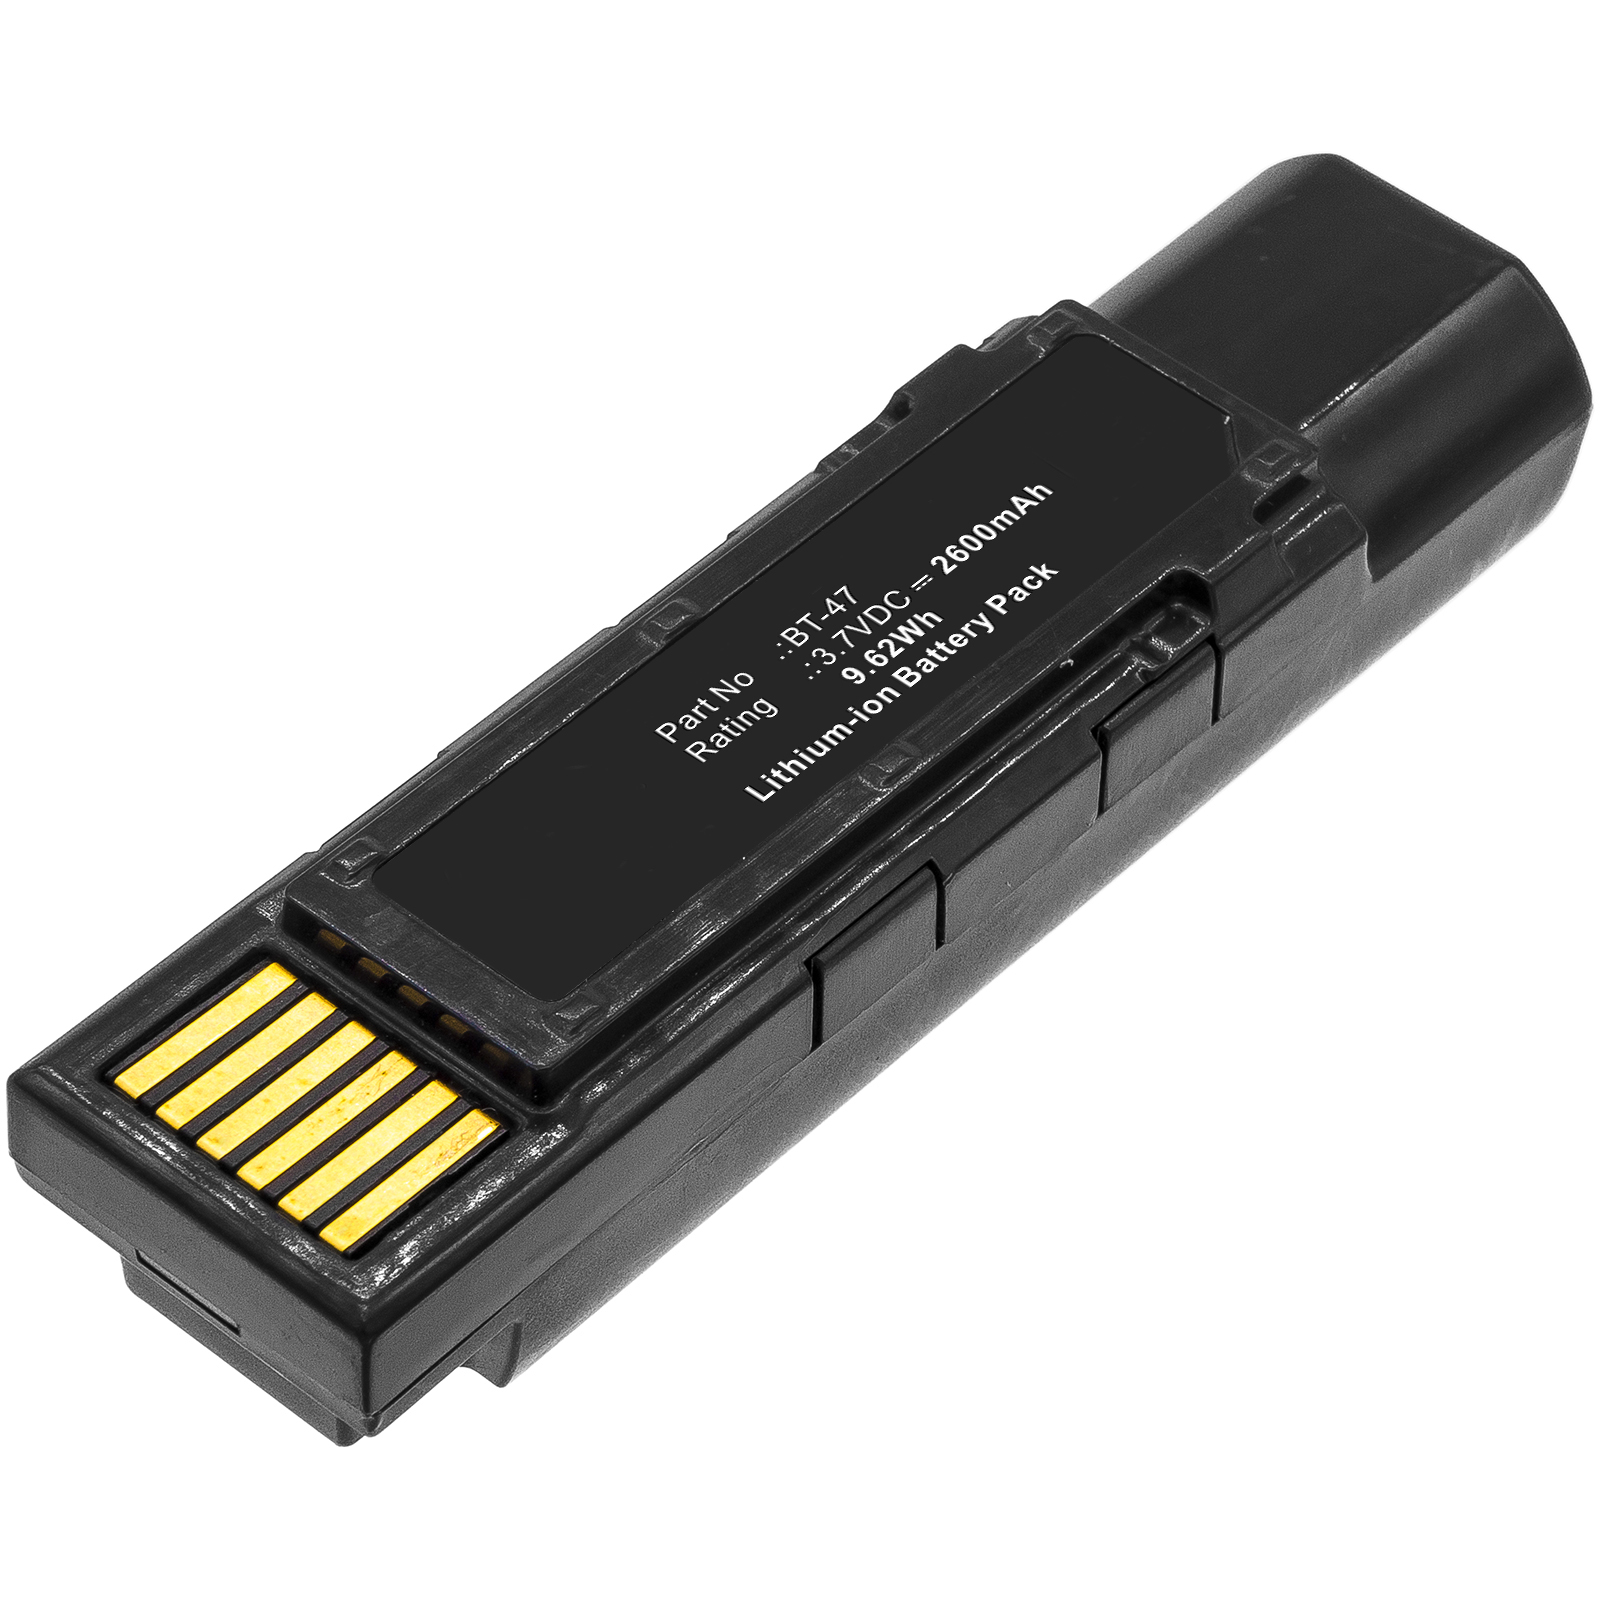 Synergy Digital Barcode Scanner Battery, Compatible with Datalogic 128004721, BT-47, TW18050652 Barcode Scanner Battery (Li-ion, 3.7V, 2600mAh)